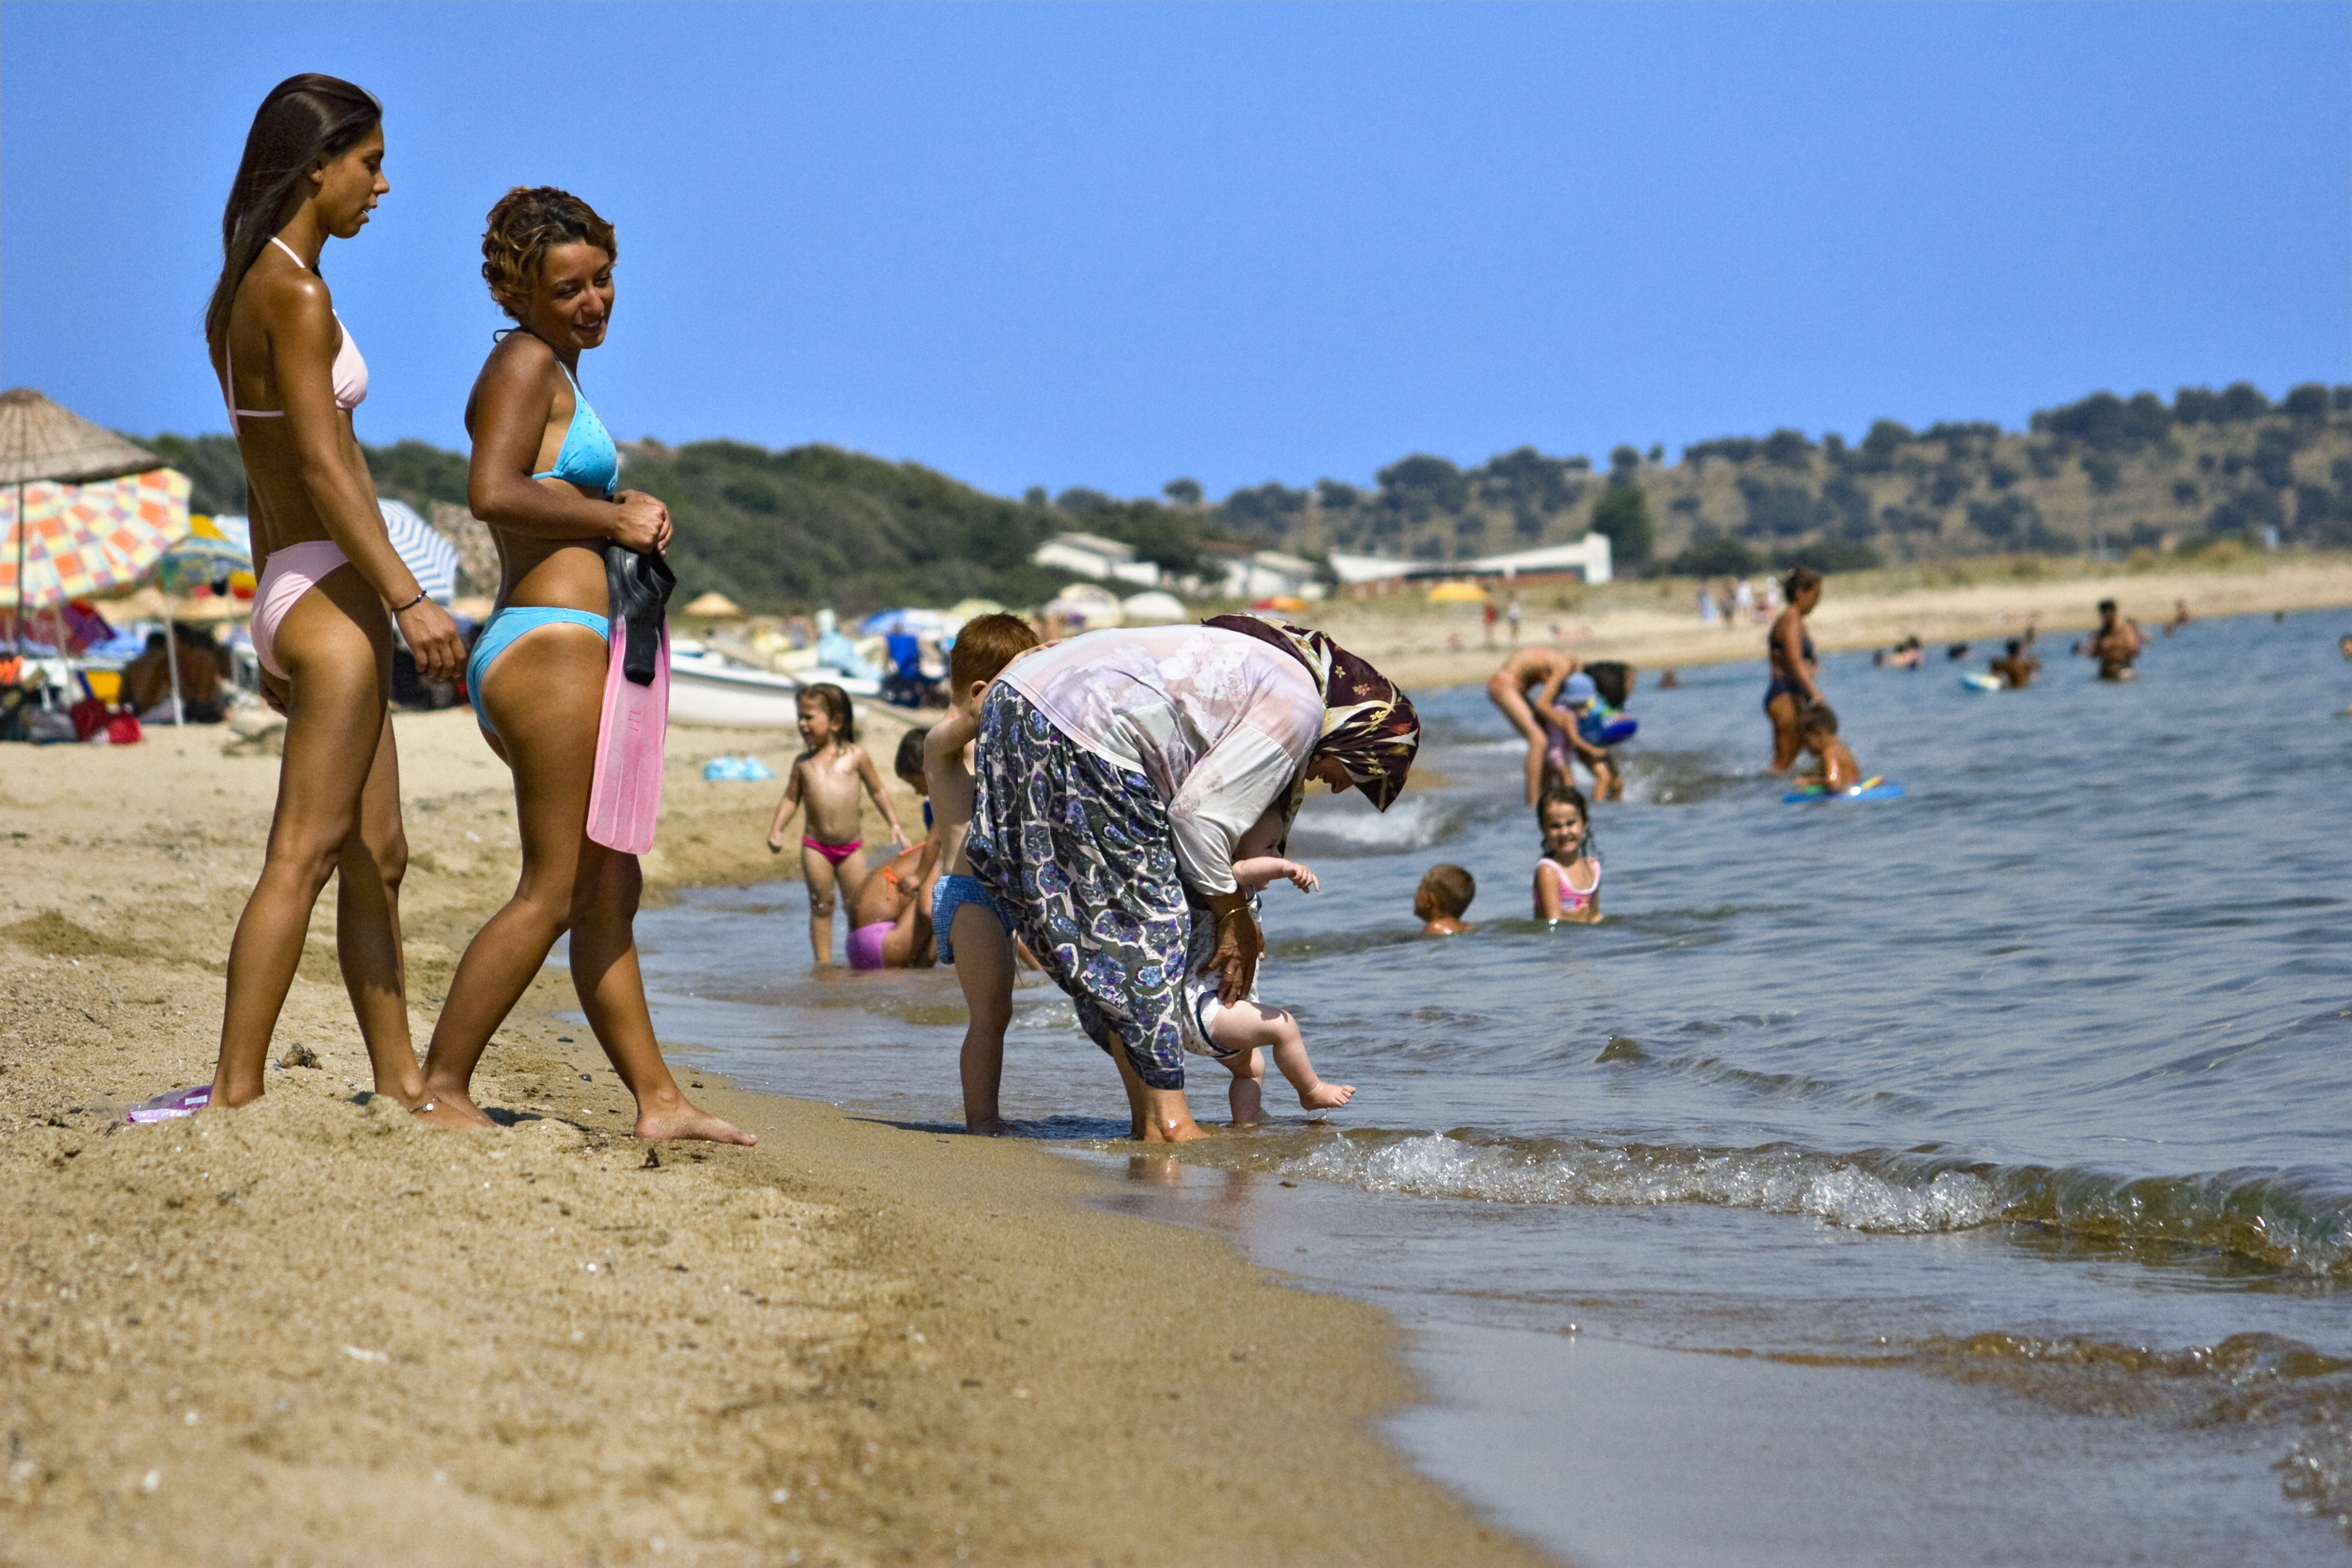 Дикий пляж отдыхающих. Люди на пляже. Снимки с пляжа. Дикие пляжи Африки. Турция пляж люди.